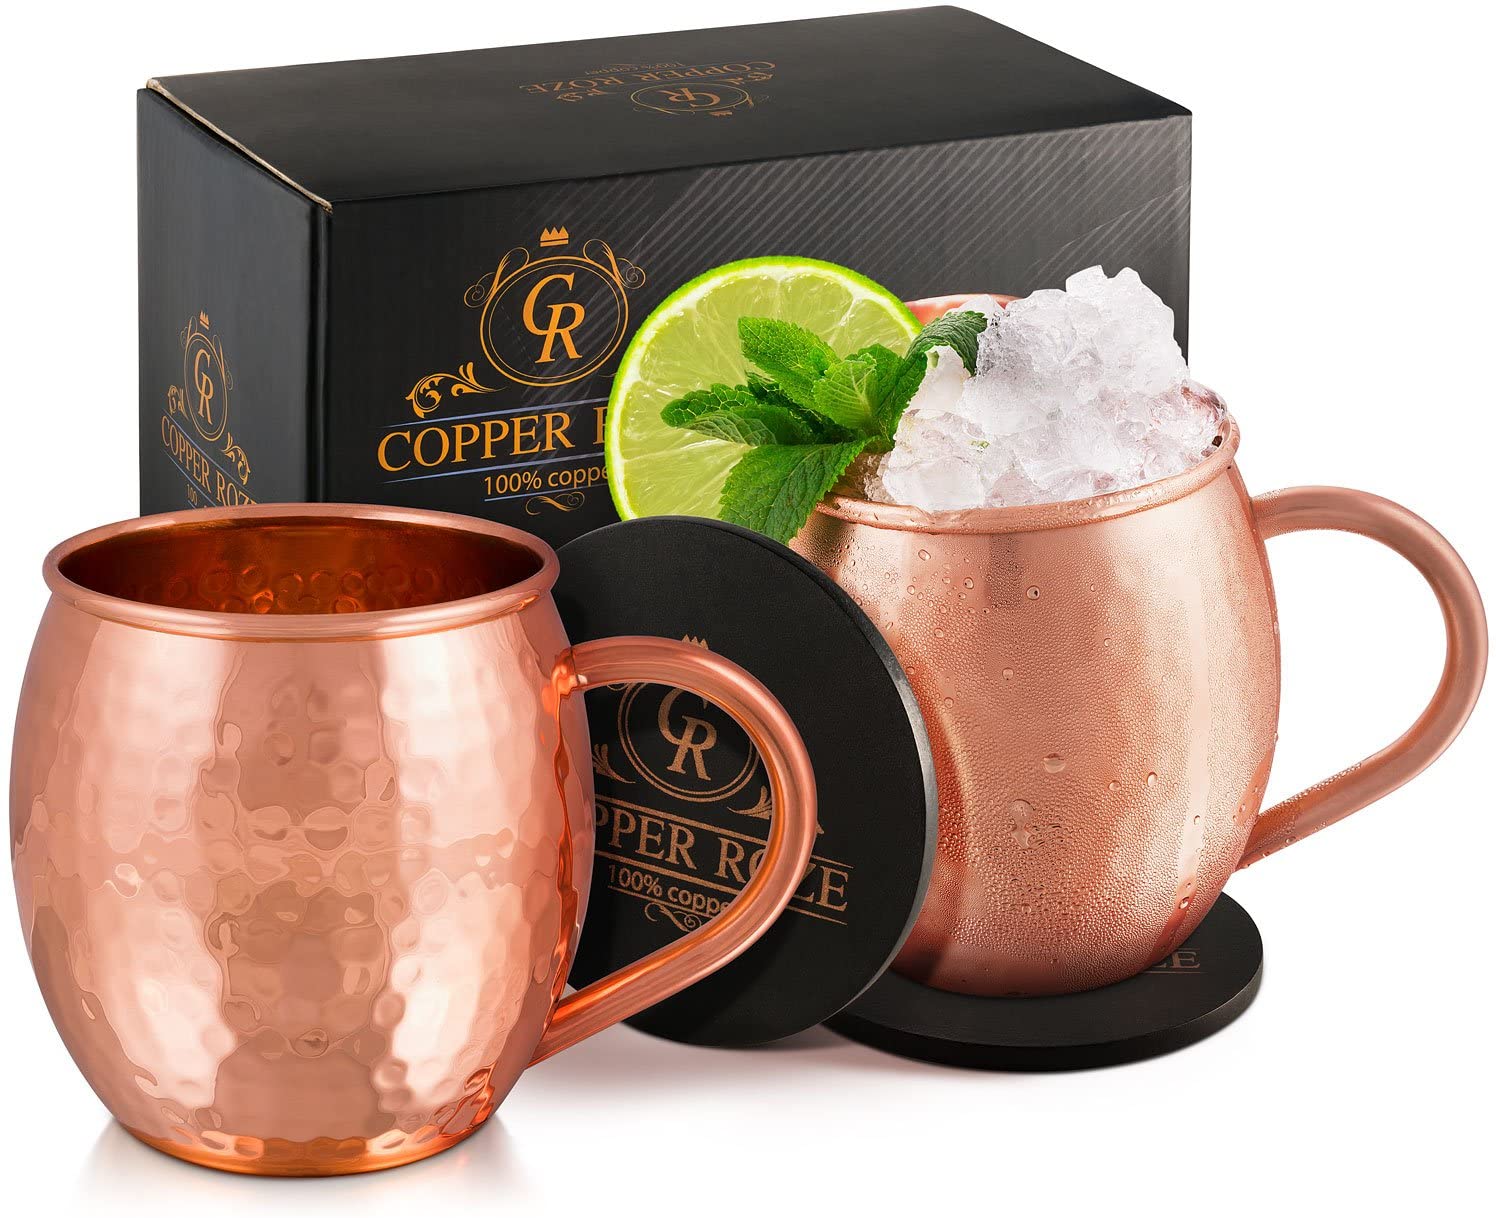 KoolBrew Copper Roze Moscow Mule Mug Set, 4-Piece